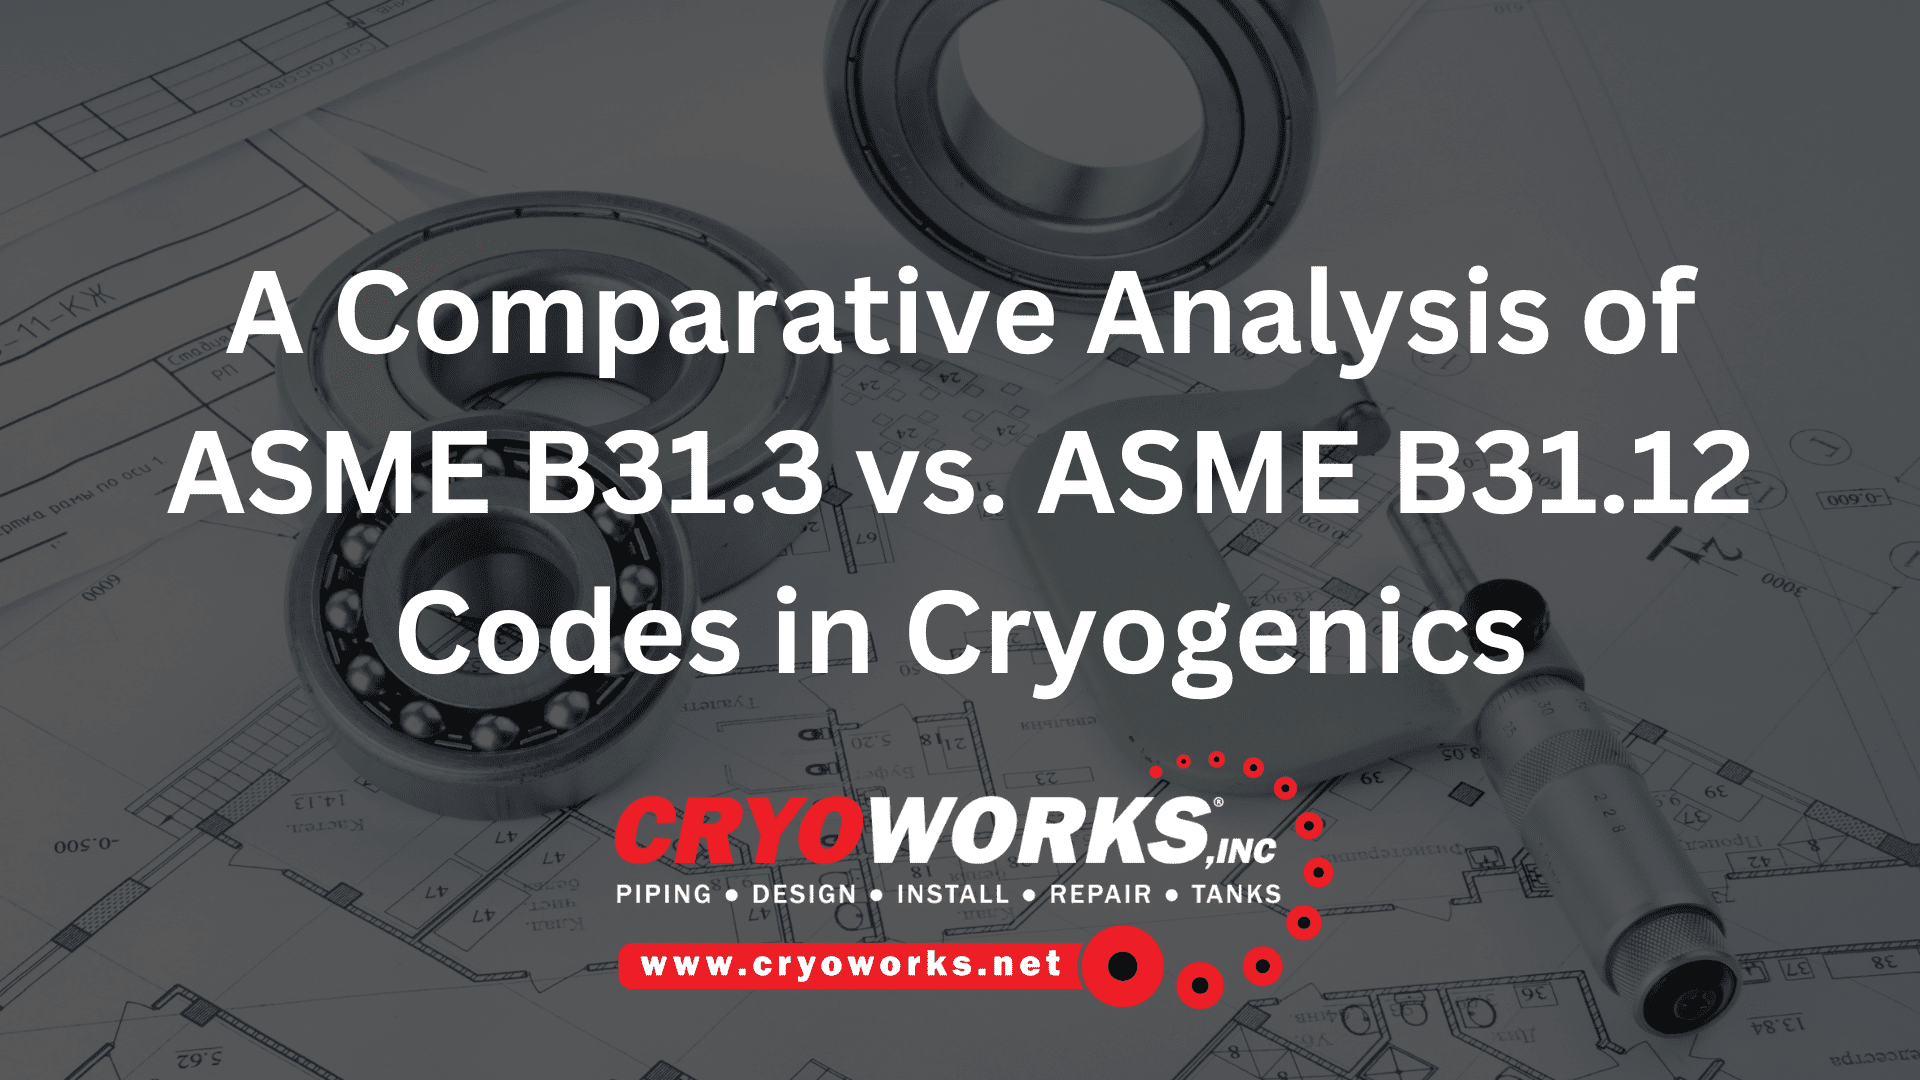 ASME B31.3 vs. B31.12